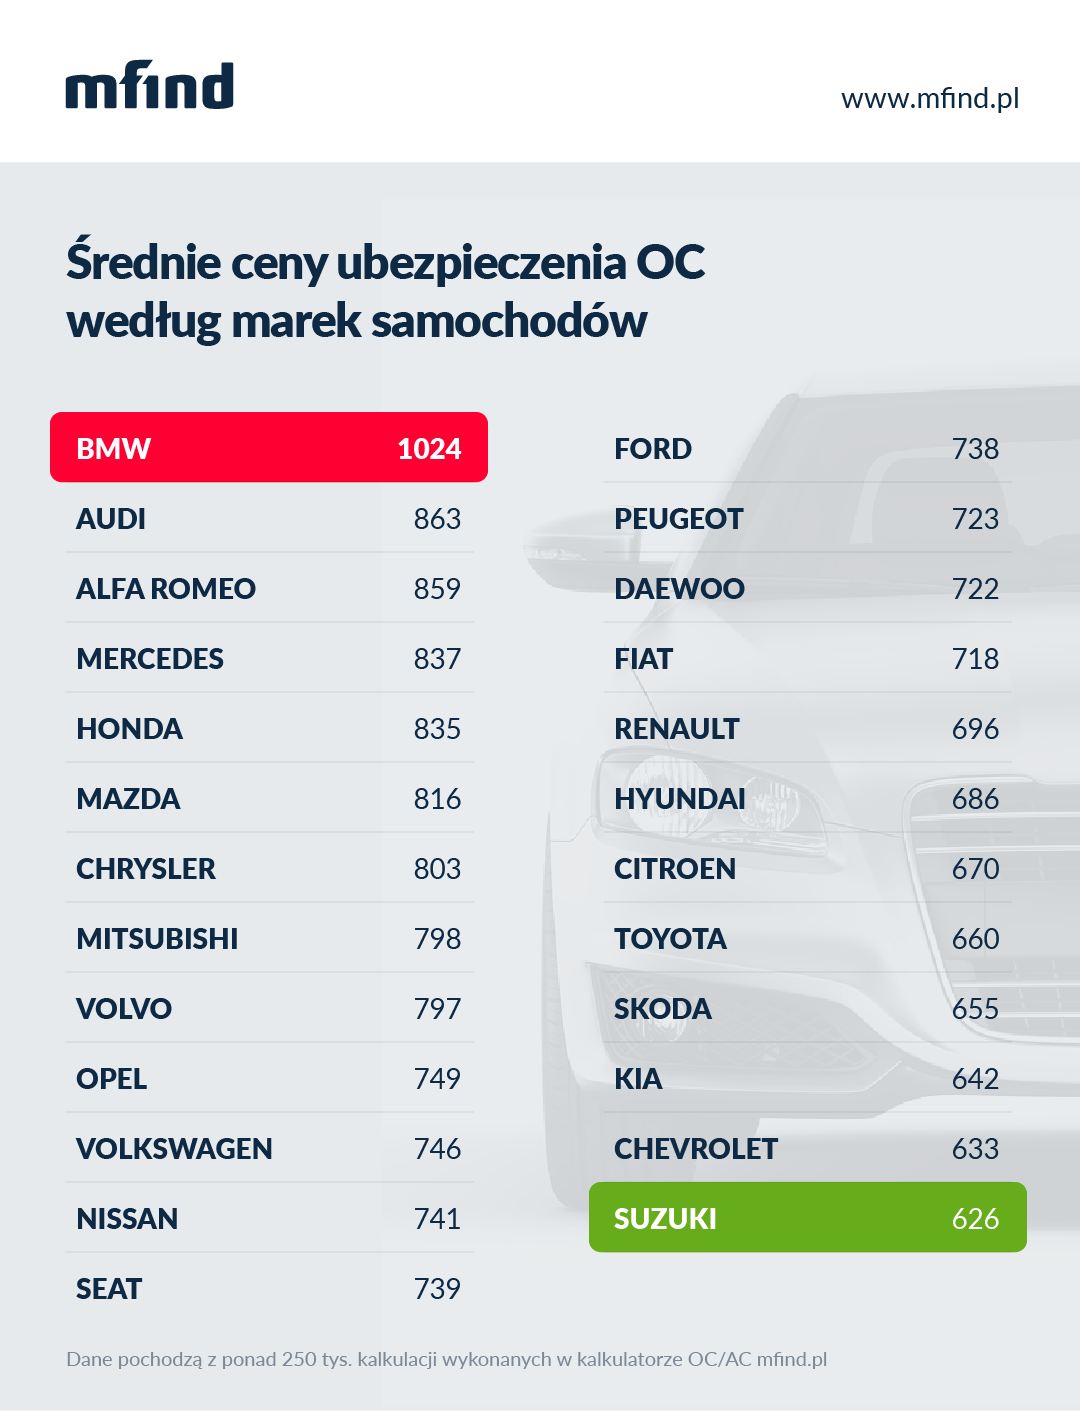 Średnie ceny OC według marek samochodów